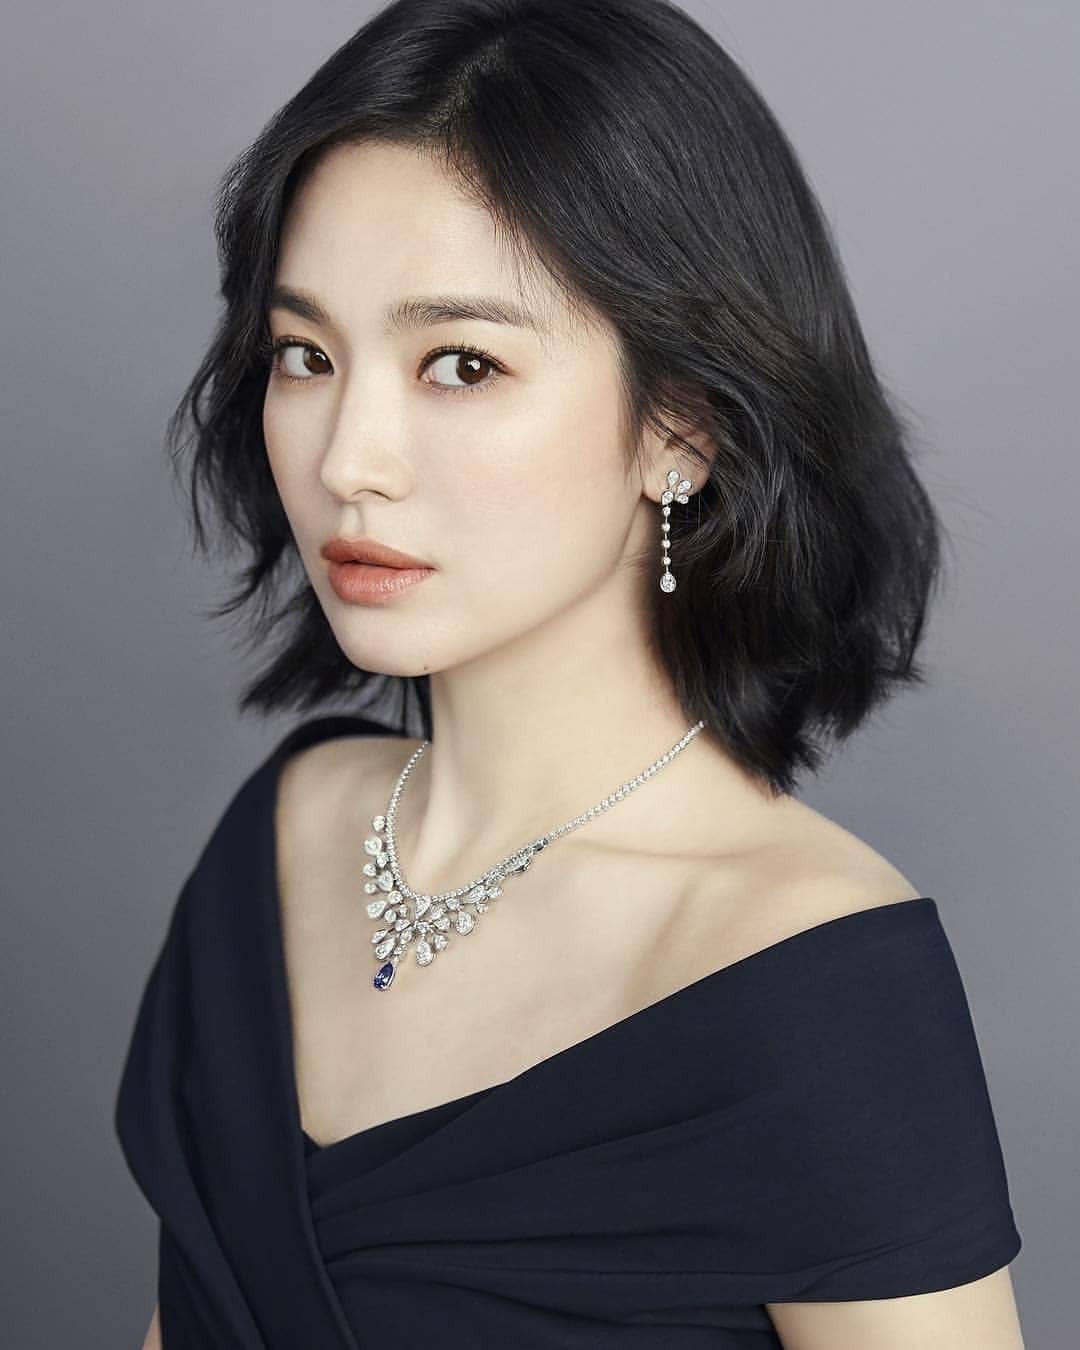 Song Hye Kyo: Khám phá vẻ đẹp quyến rũ của nữ diễn viên Song Hye Kyo trong hình ảnh này và cùng nhìn lại những vai diễn đáng nhớ của cô.